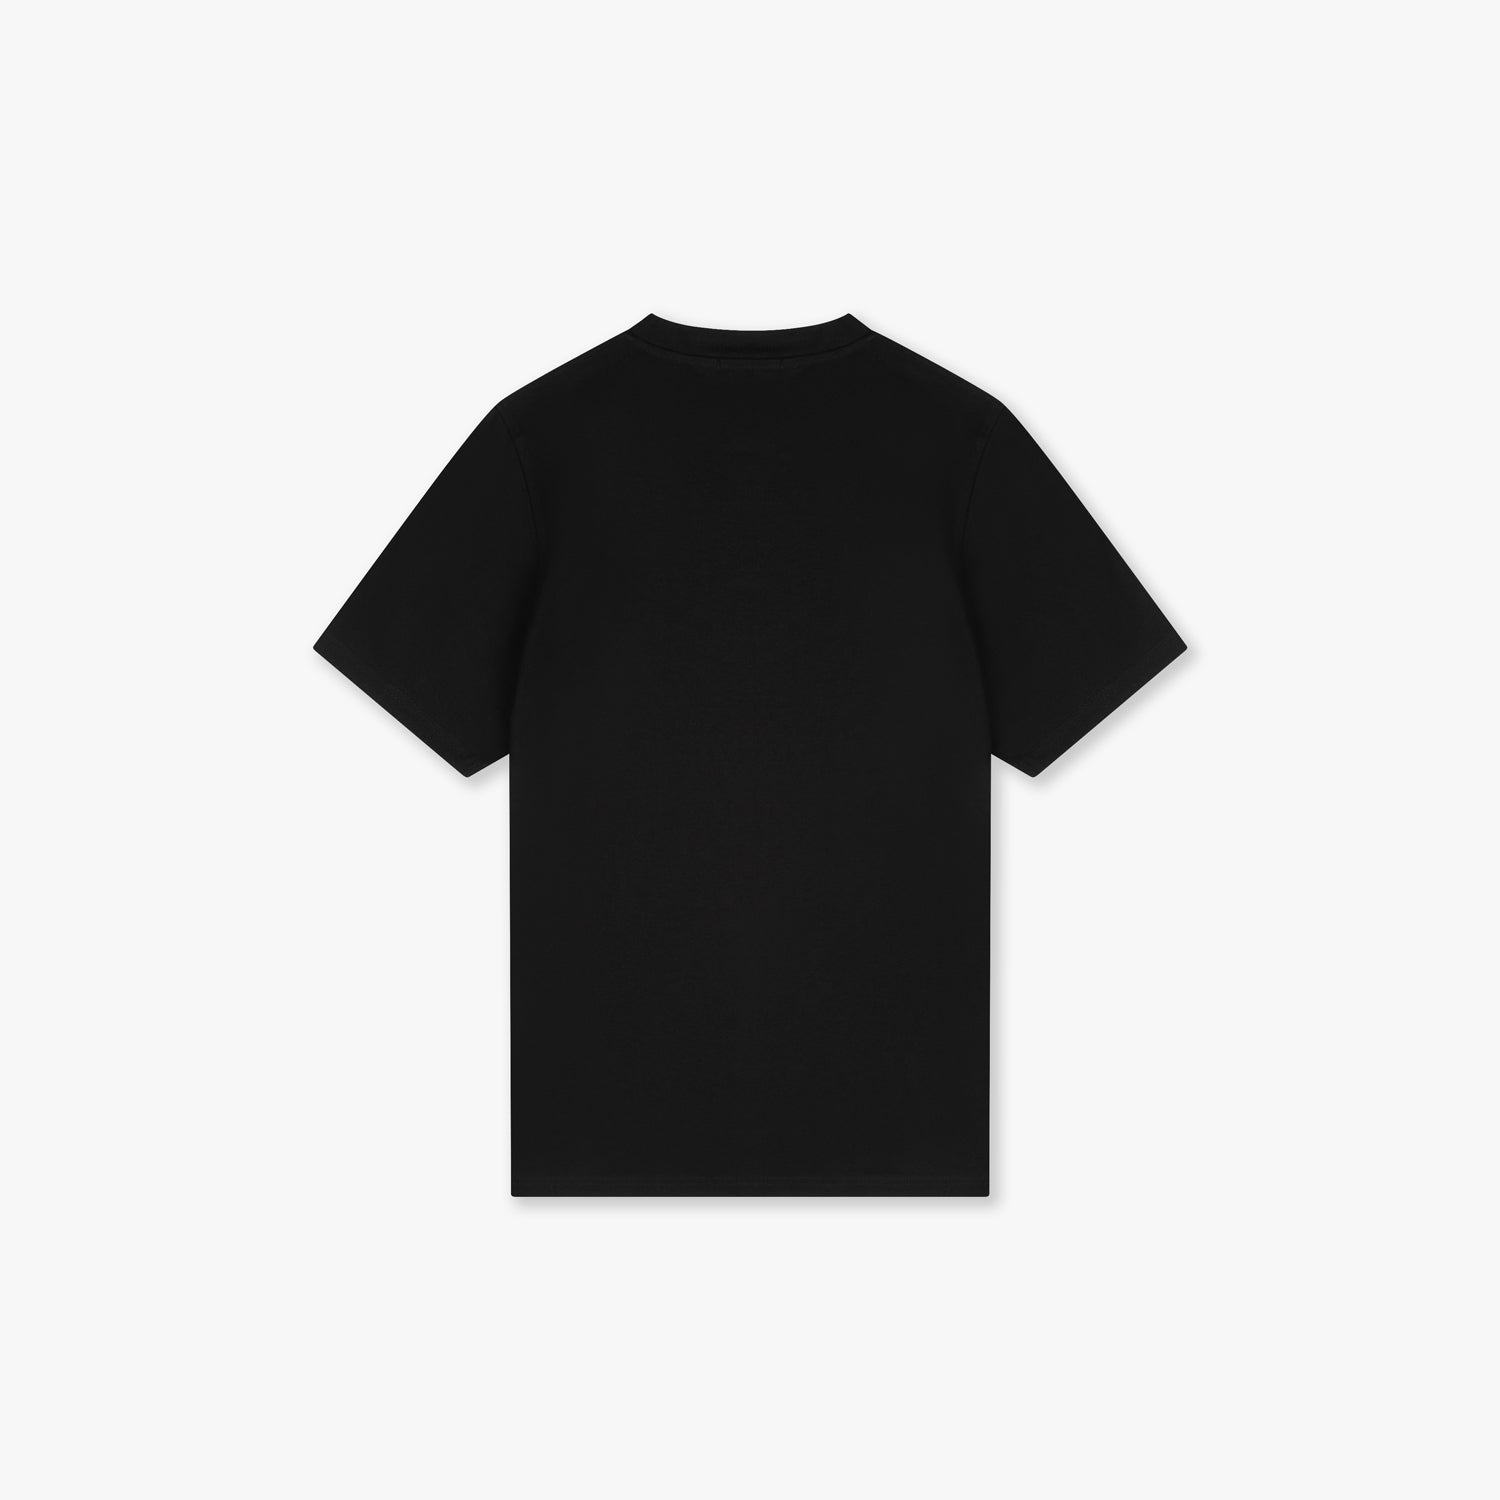 Croyez Basic T-Shirt Zwart - Wit